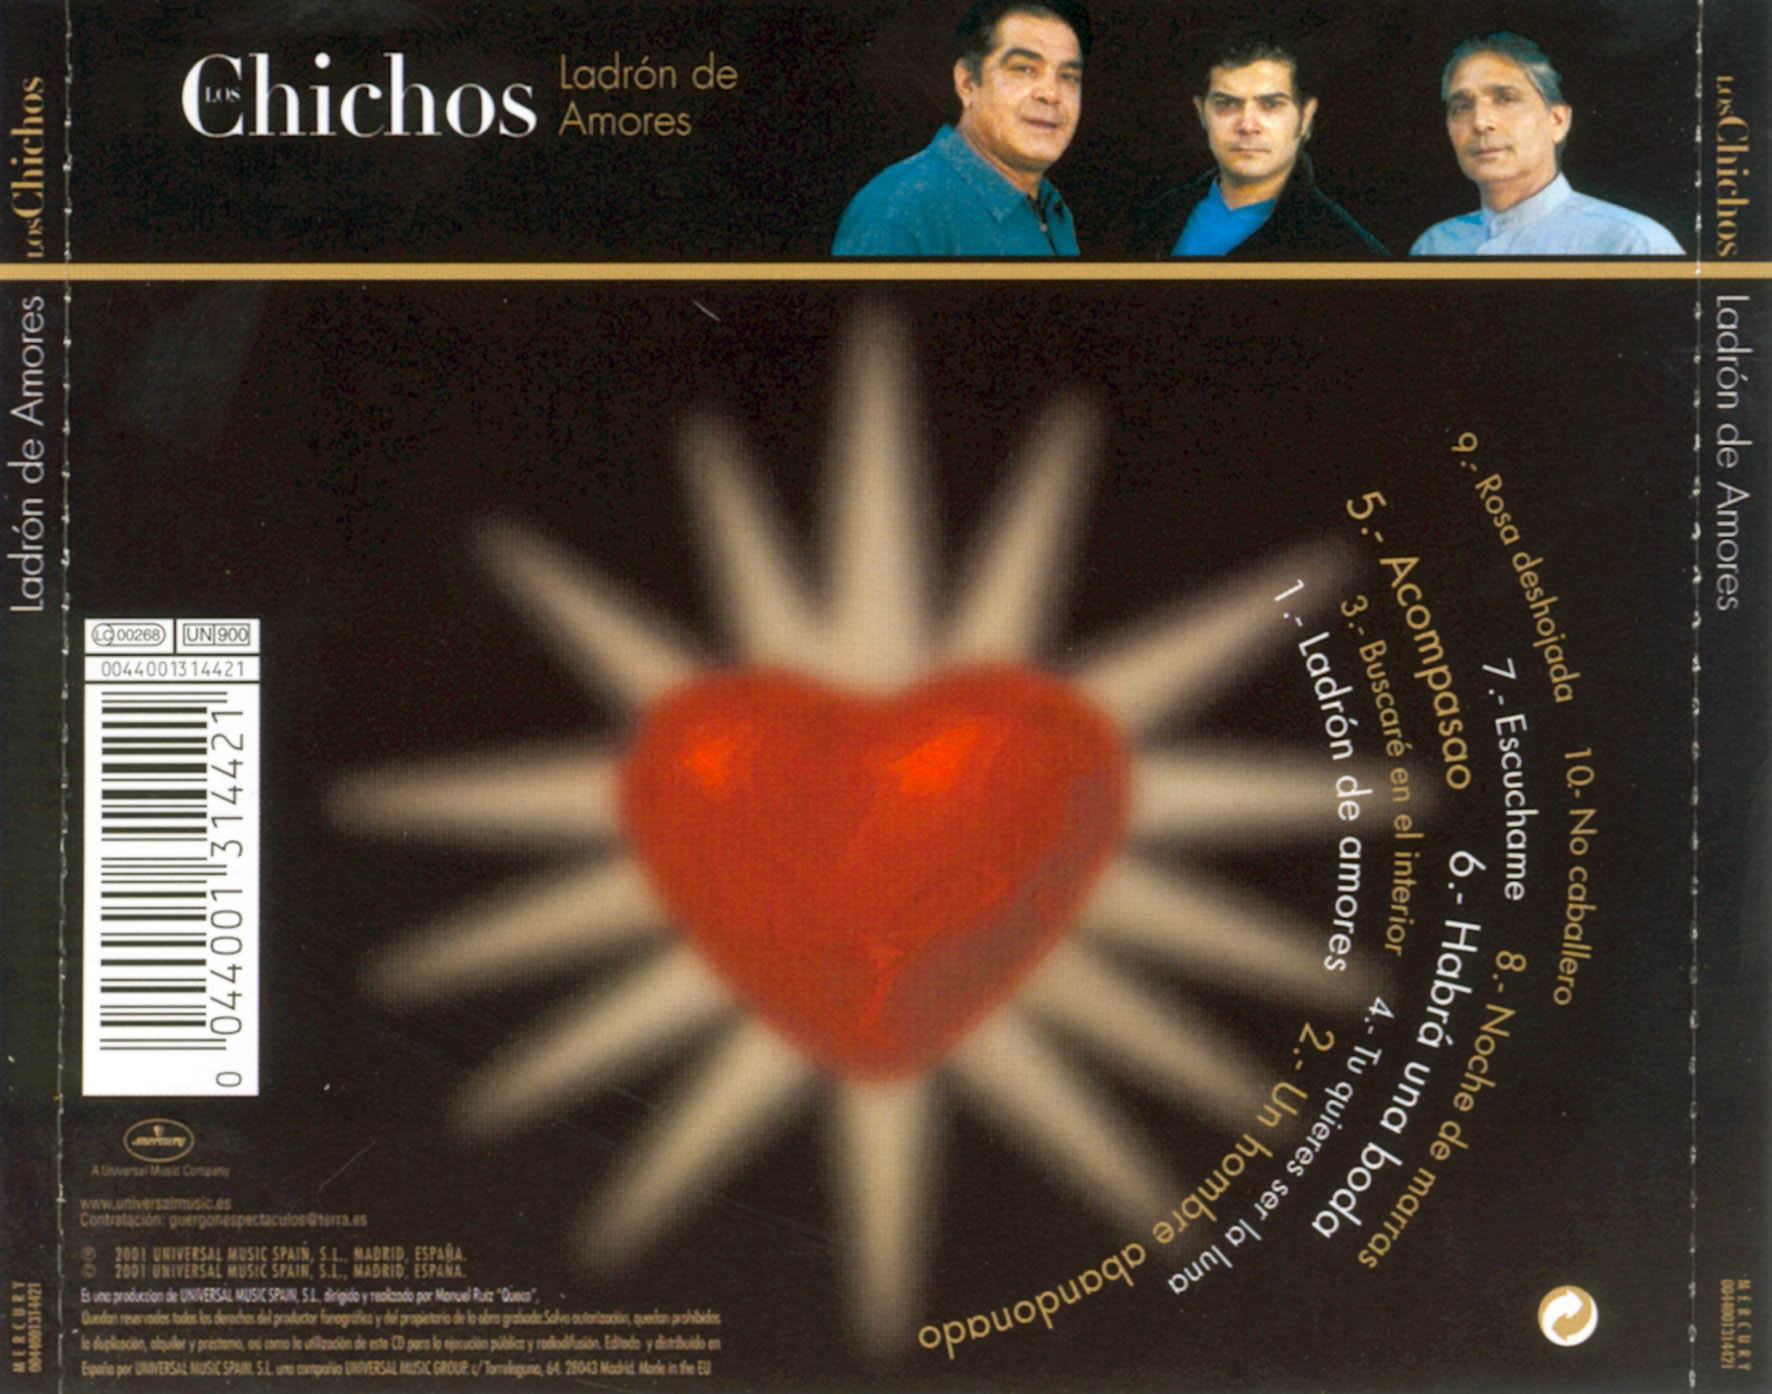 Cartula Trasera de Los Chichos - Ladron De Amores